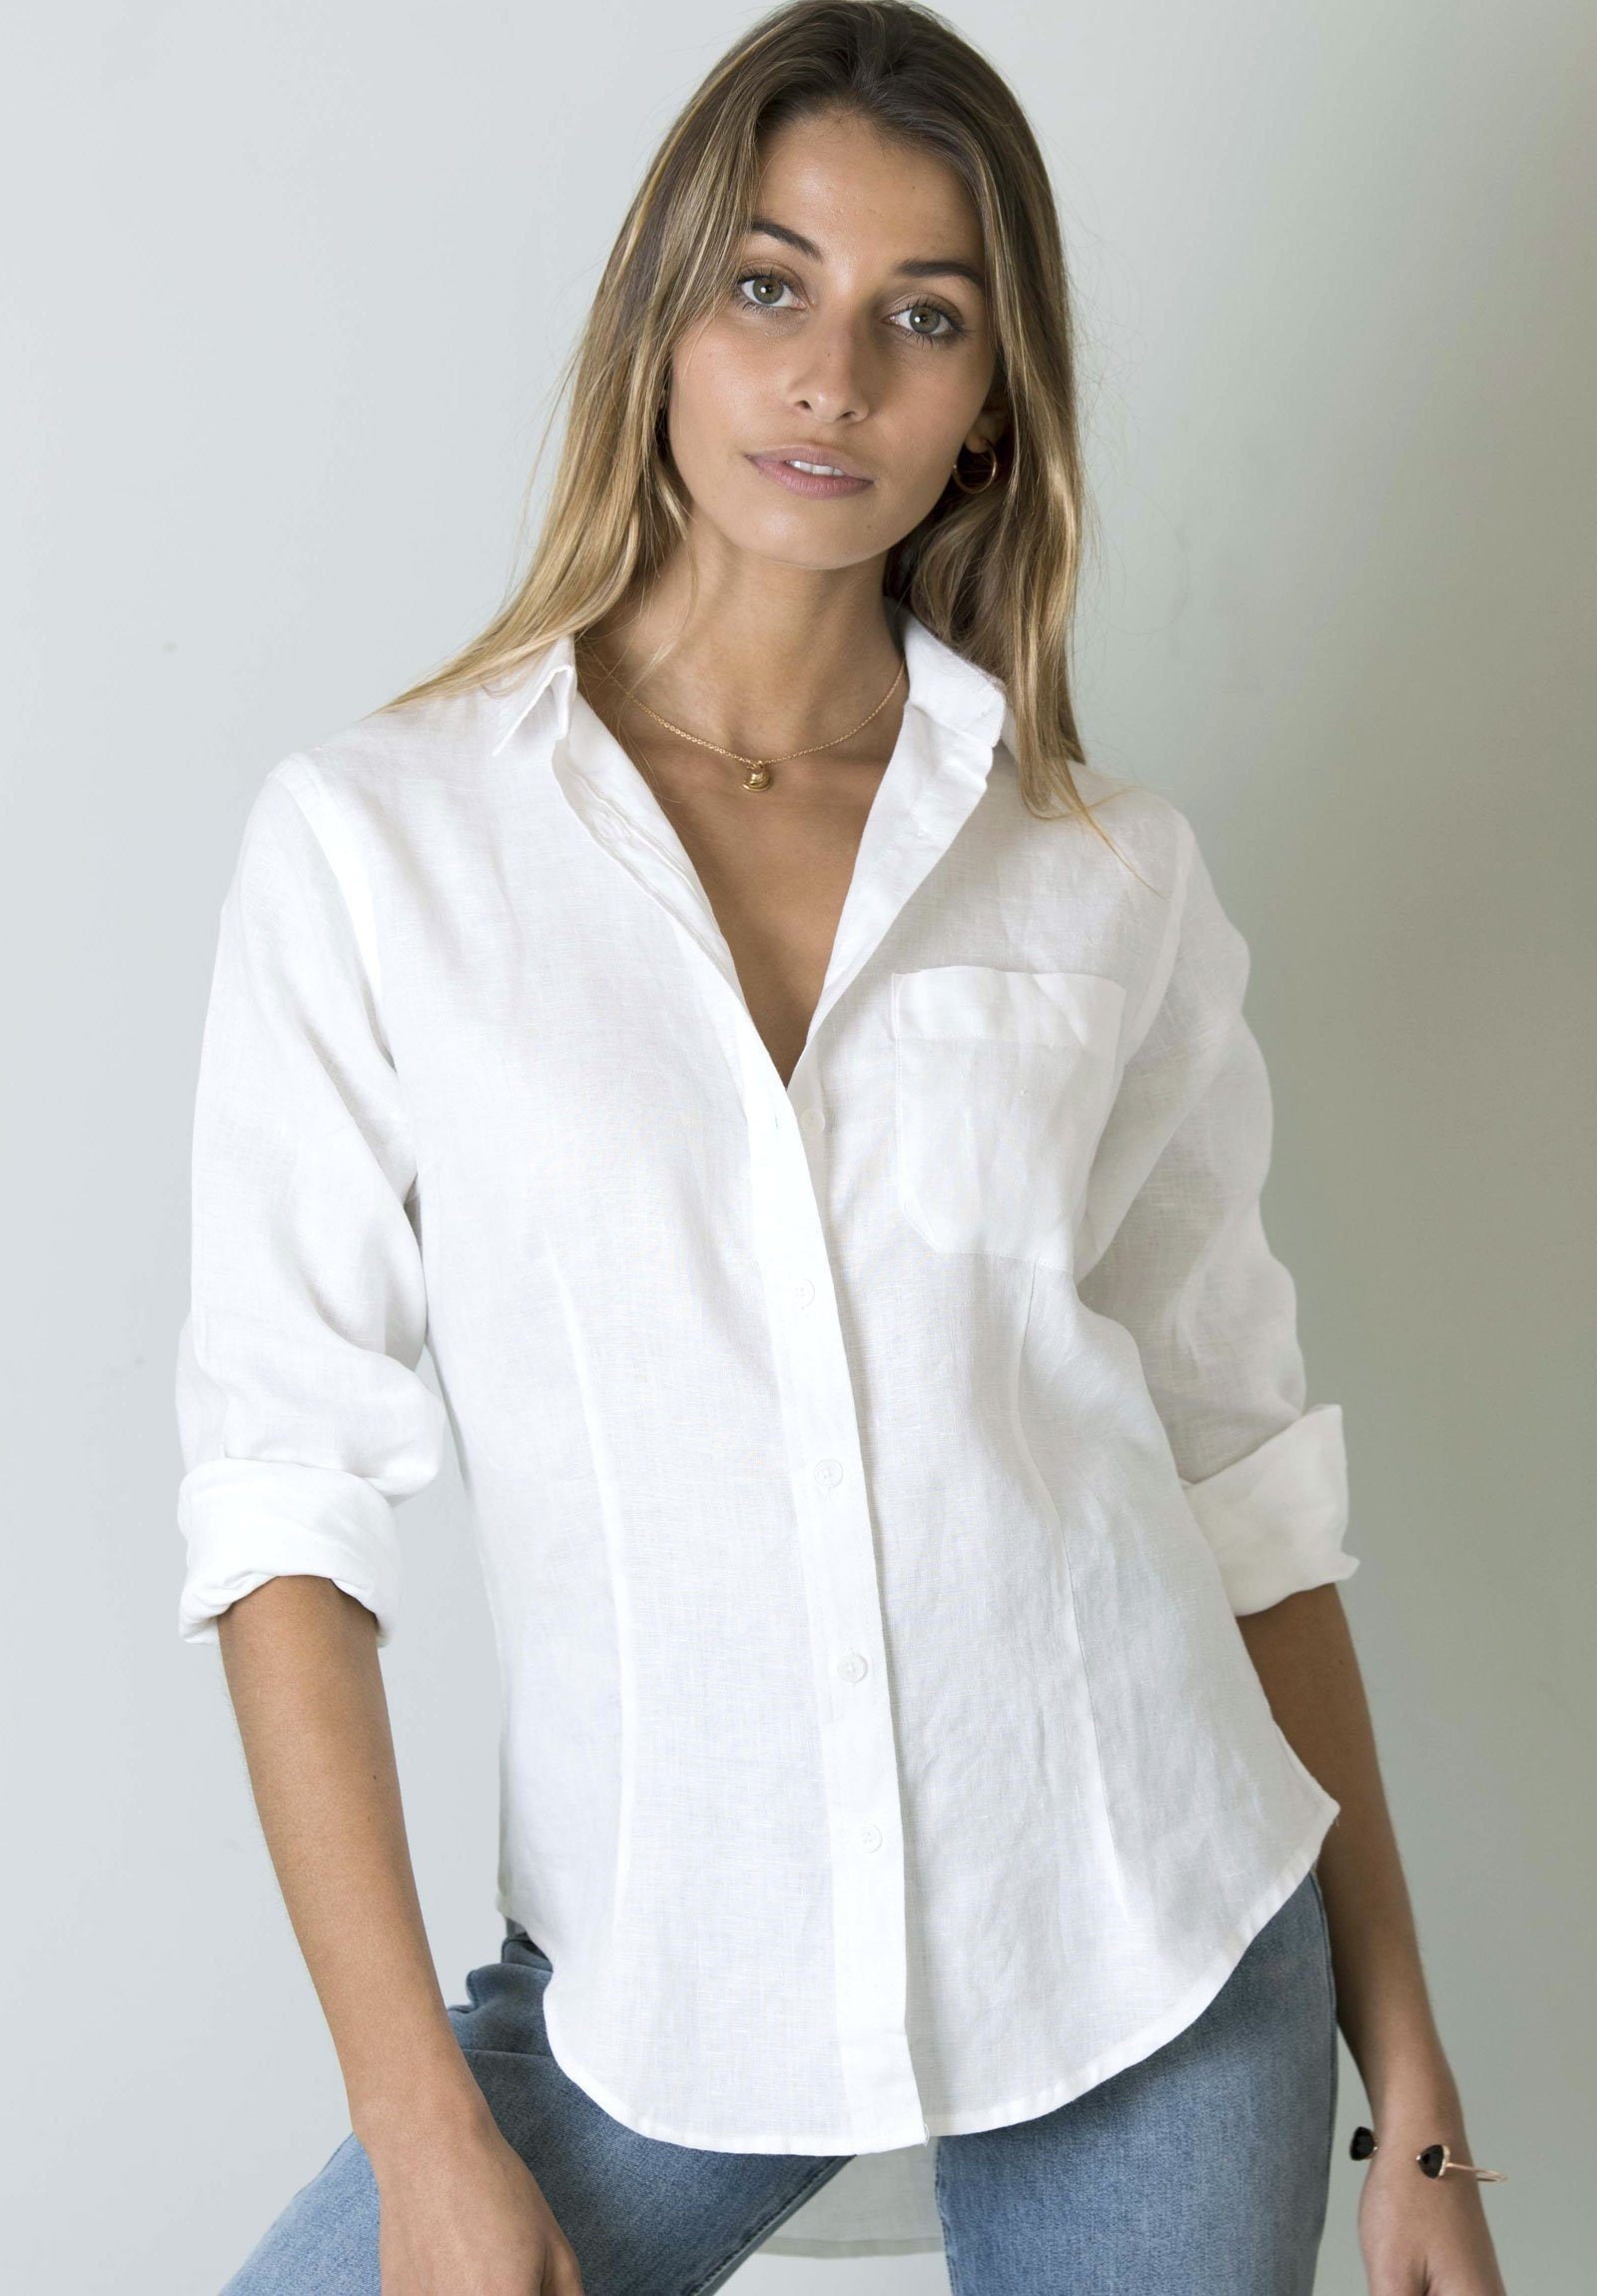 White Linen Shirt Women 100 Linen Button Down Shirts